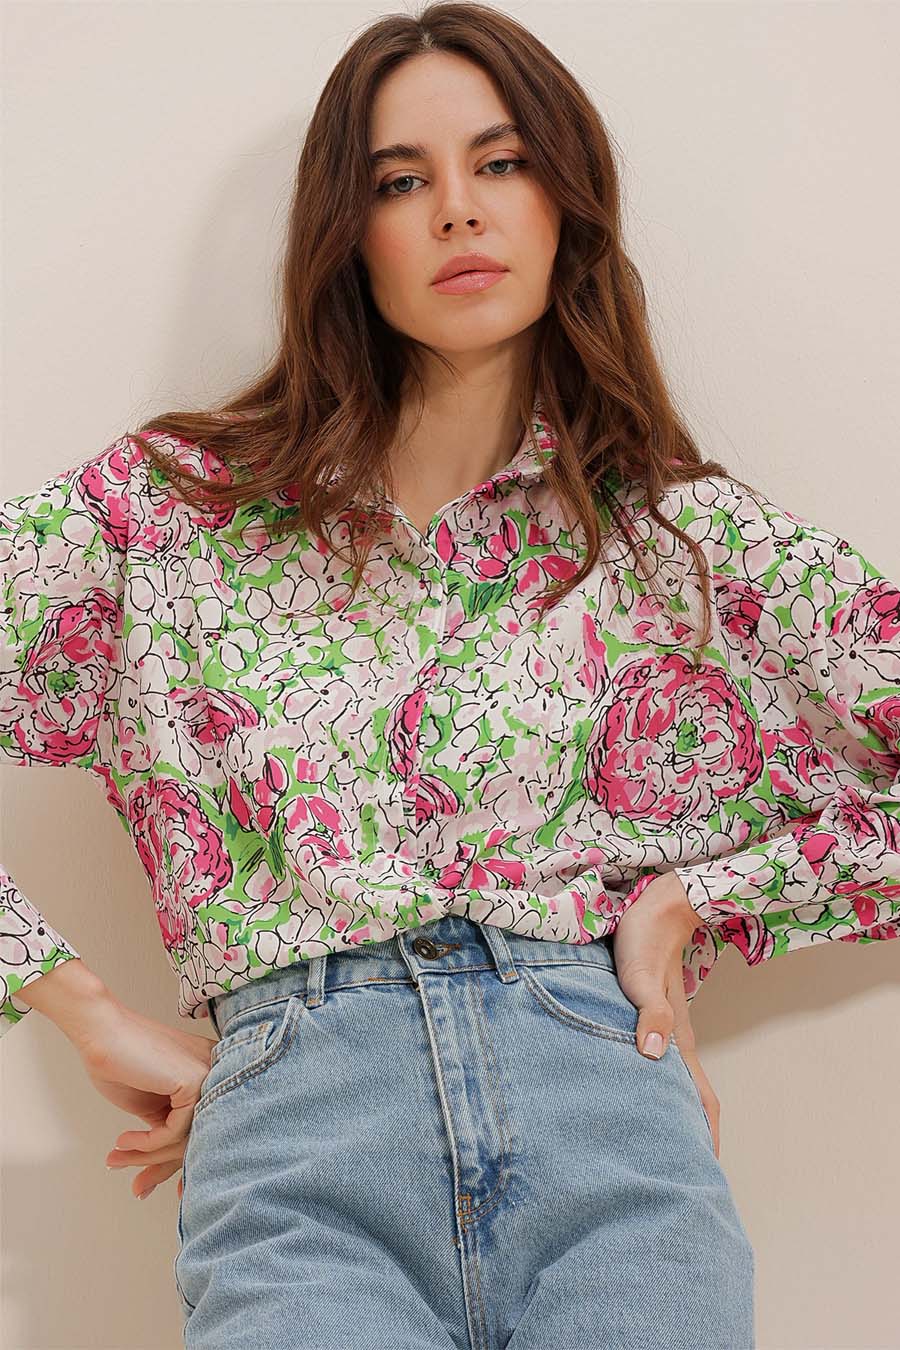 Γυναικείο πουκάμισο Lowanna, Πράσινο/Ροζ 2